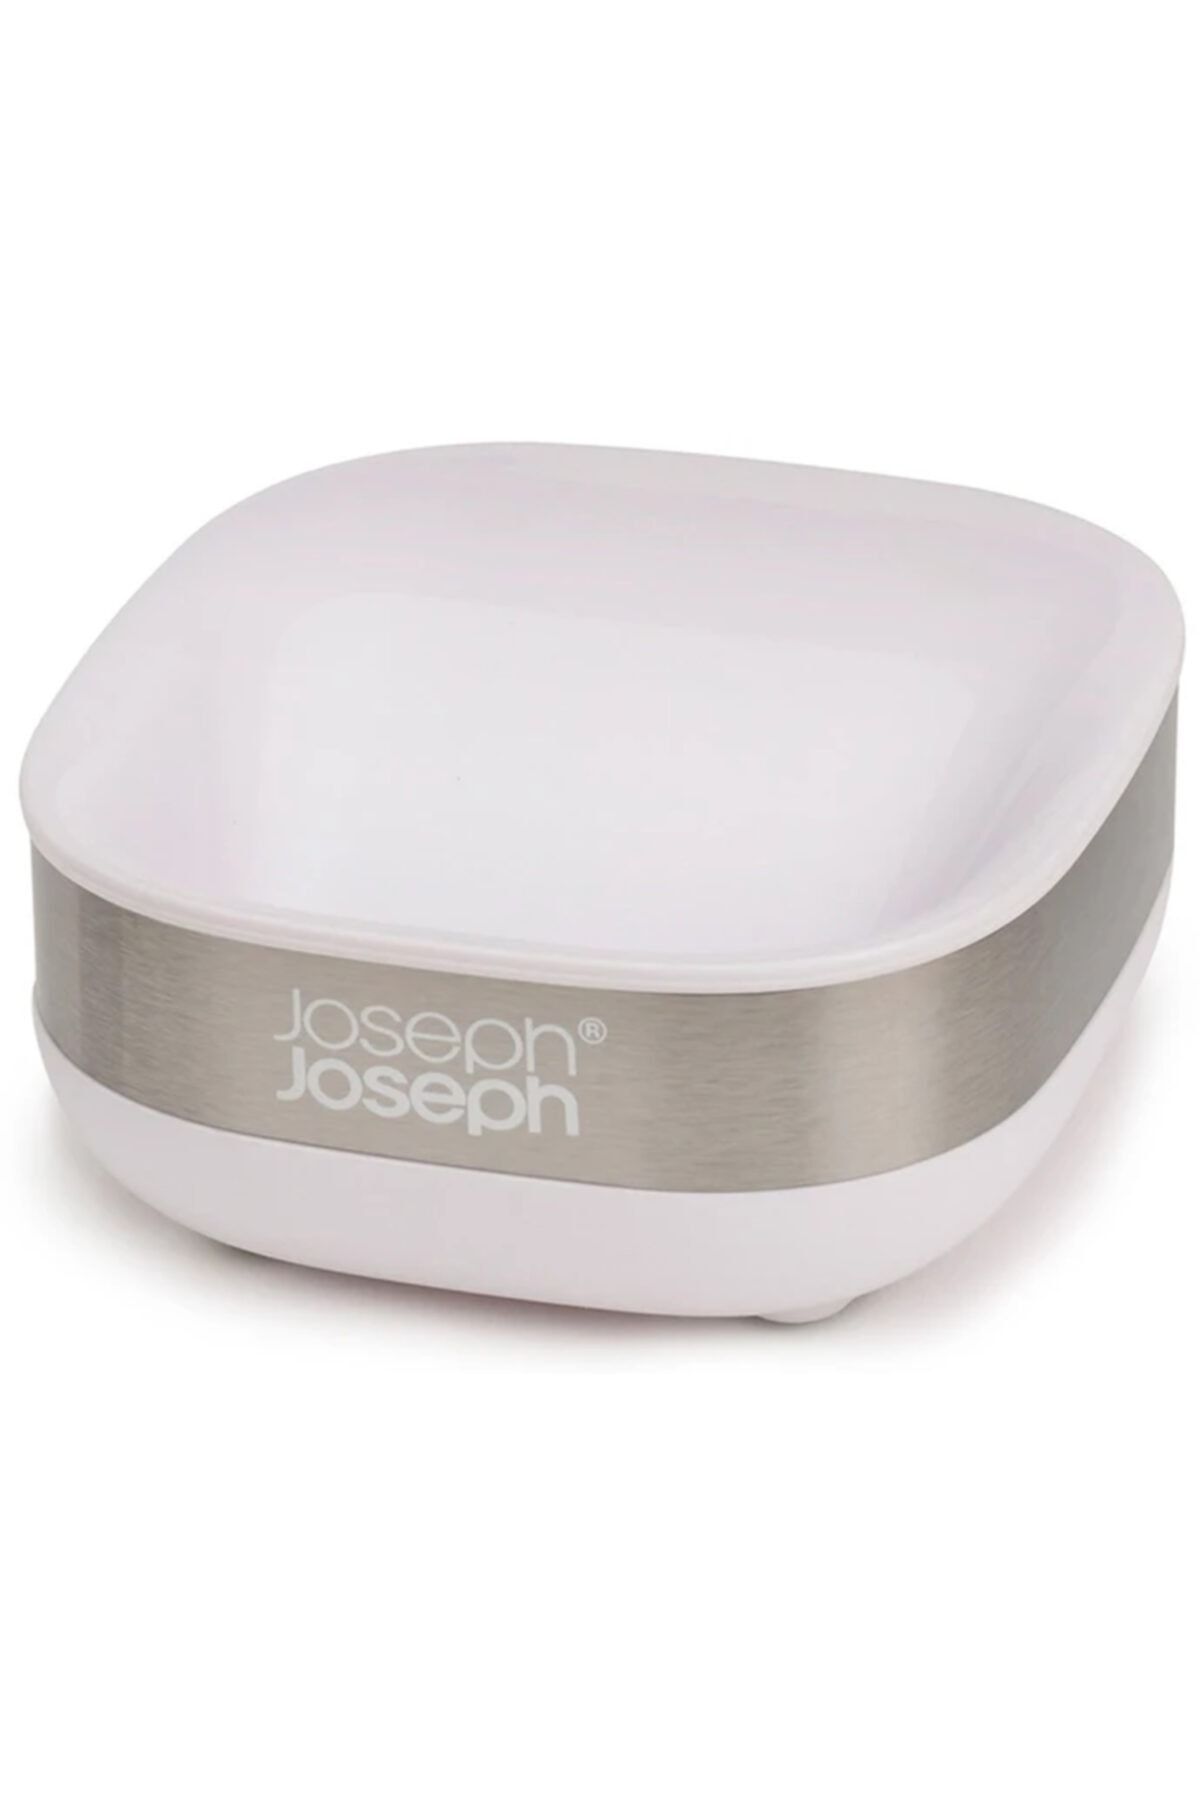 Joseph Joseph 70533 Slim Steel Sabunluk